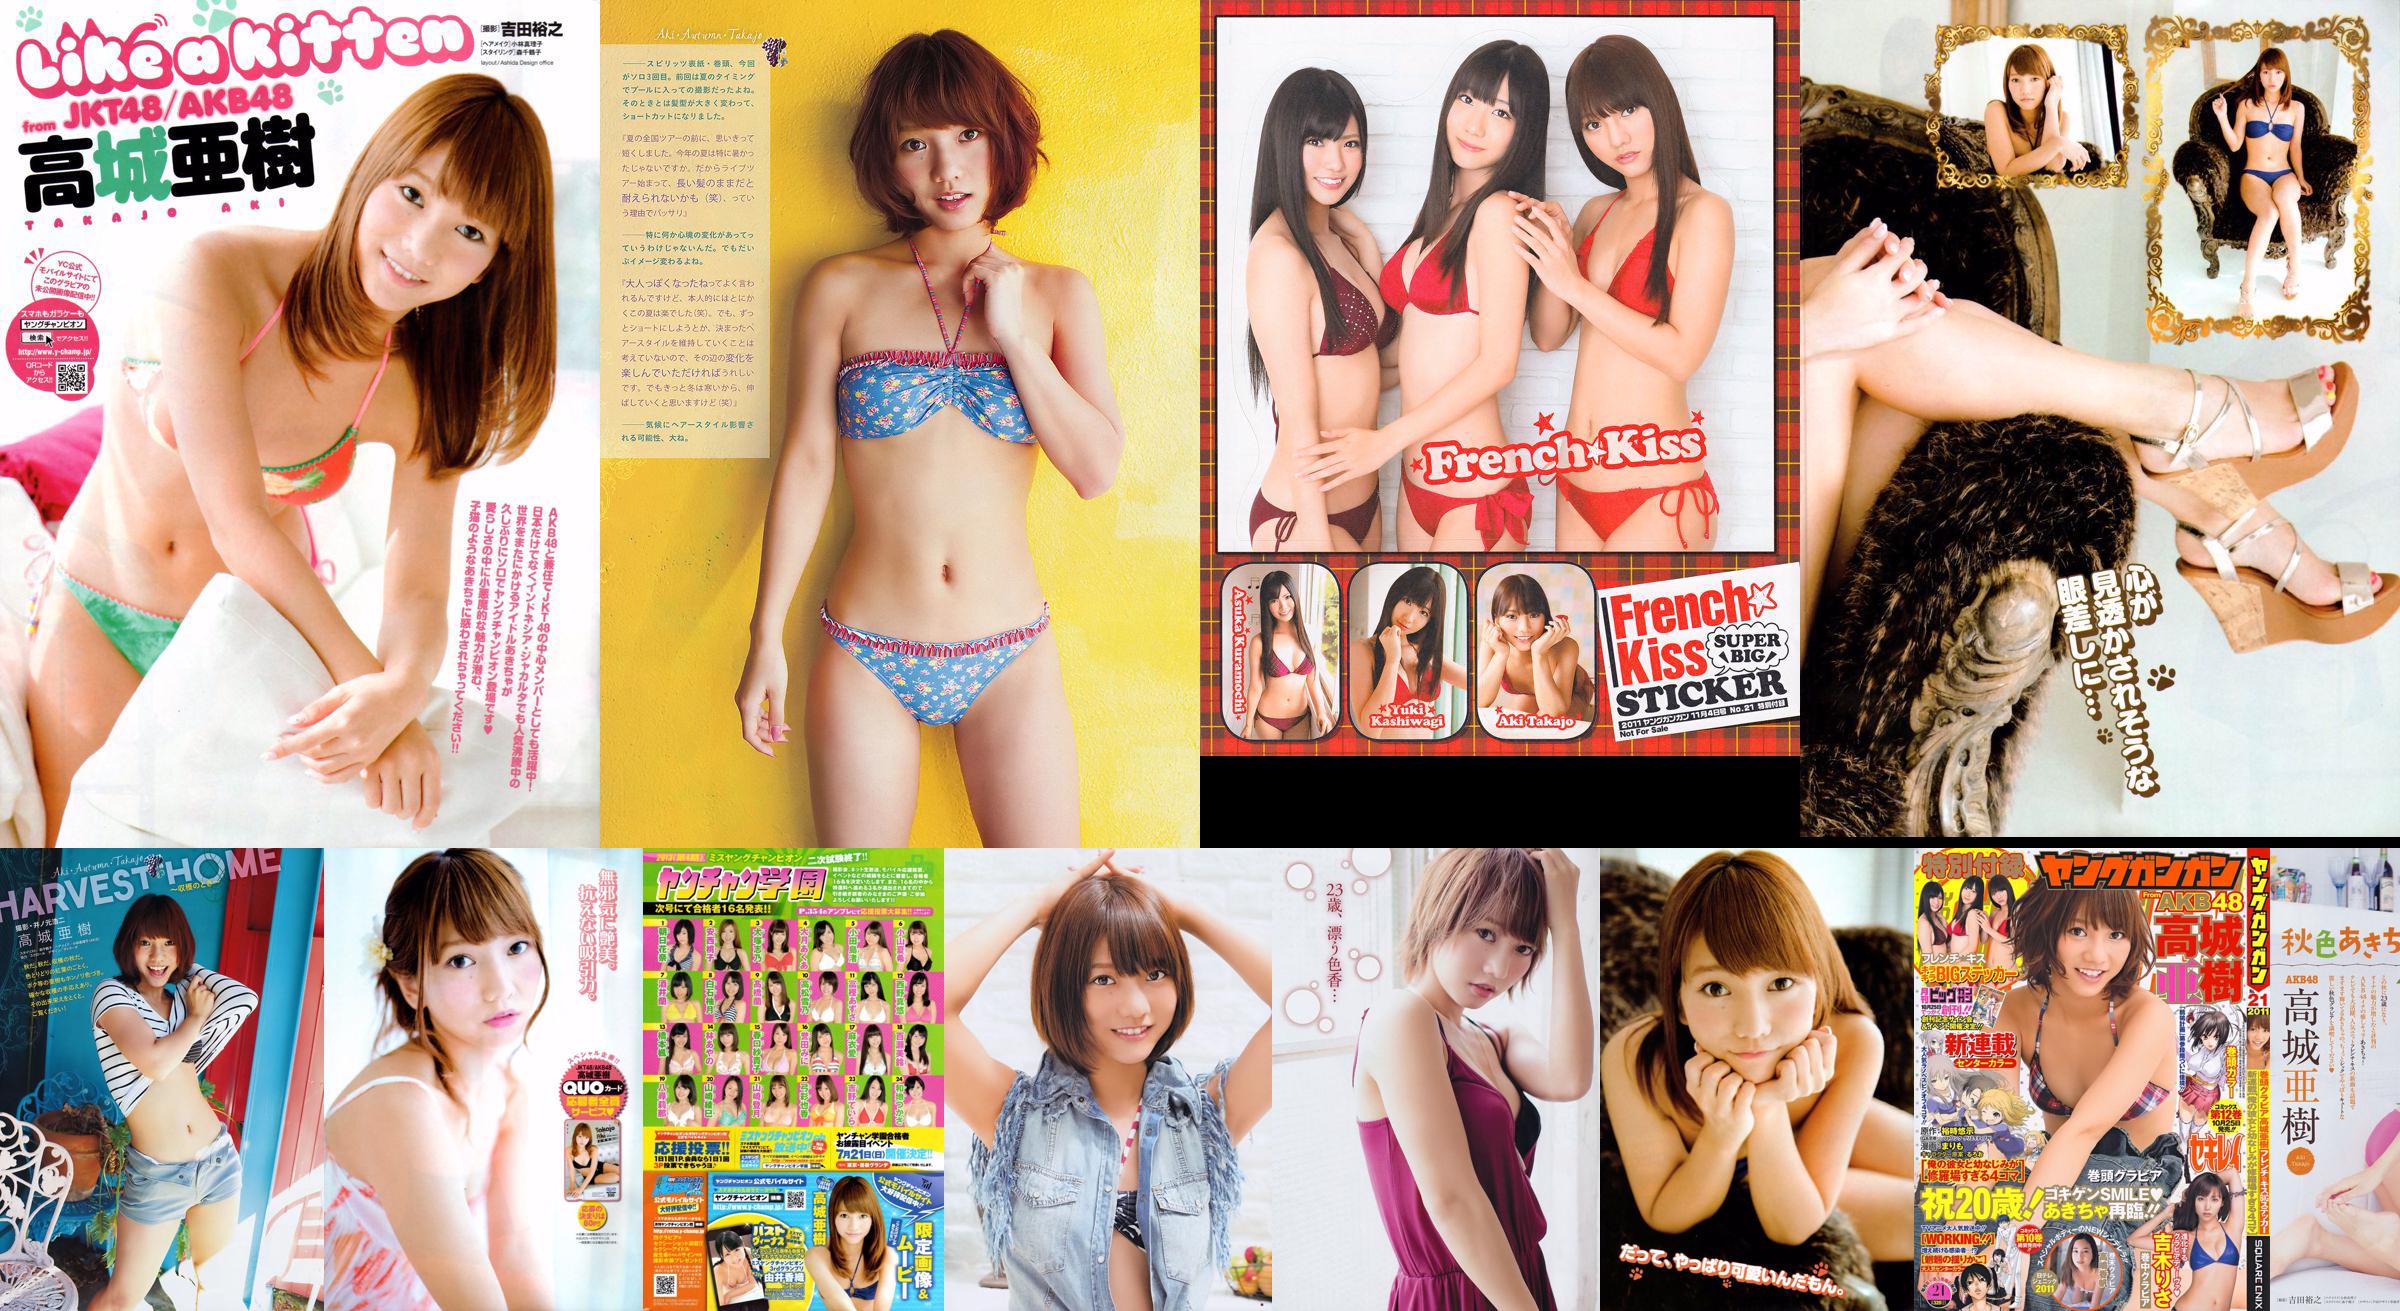 [แชมป์หนุ่ม] Takajo Aki Izumi Misaki 2014 No.21 Photo Magazine No.039765 หน้า 9